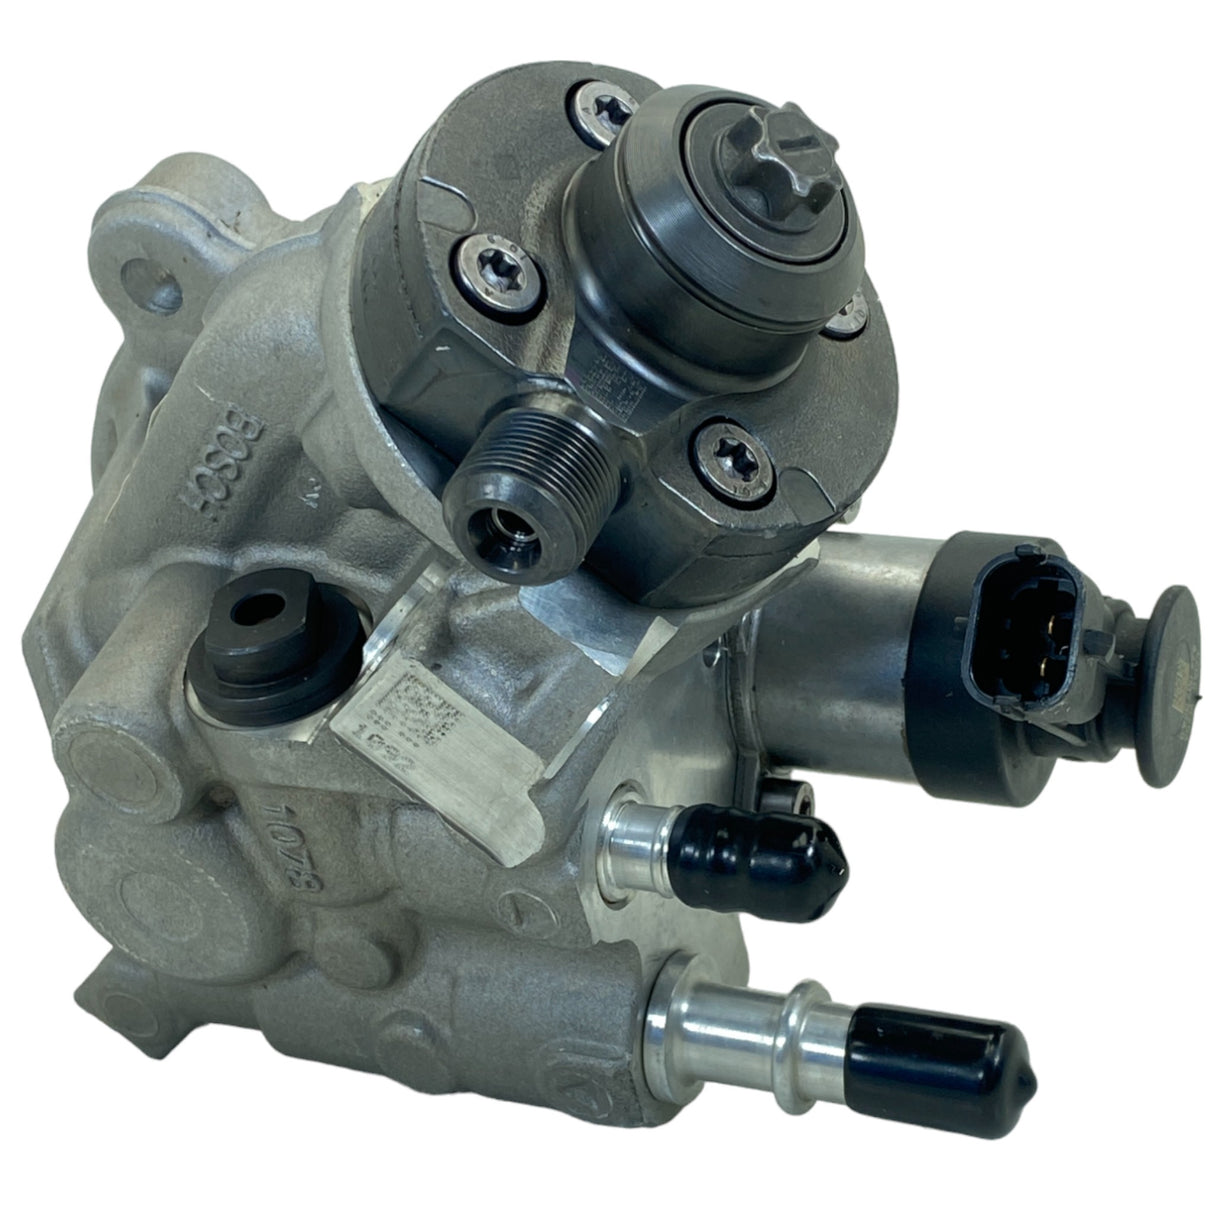 0-445-020-526 Genuine Bosch Fuel Pump